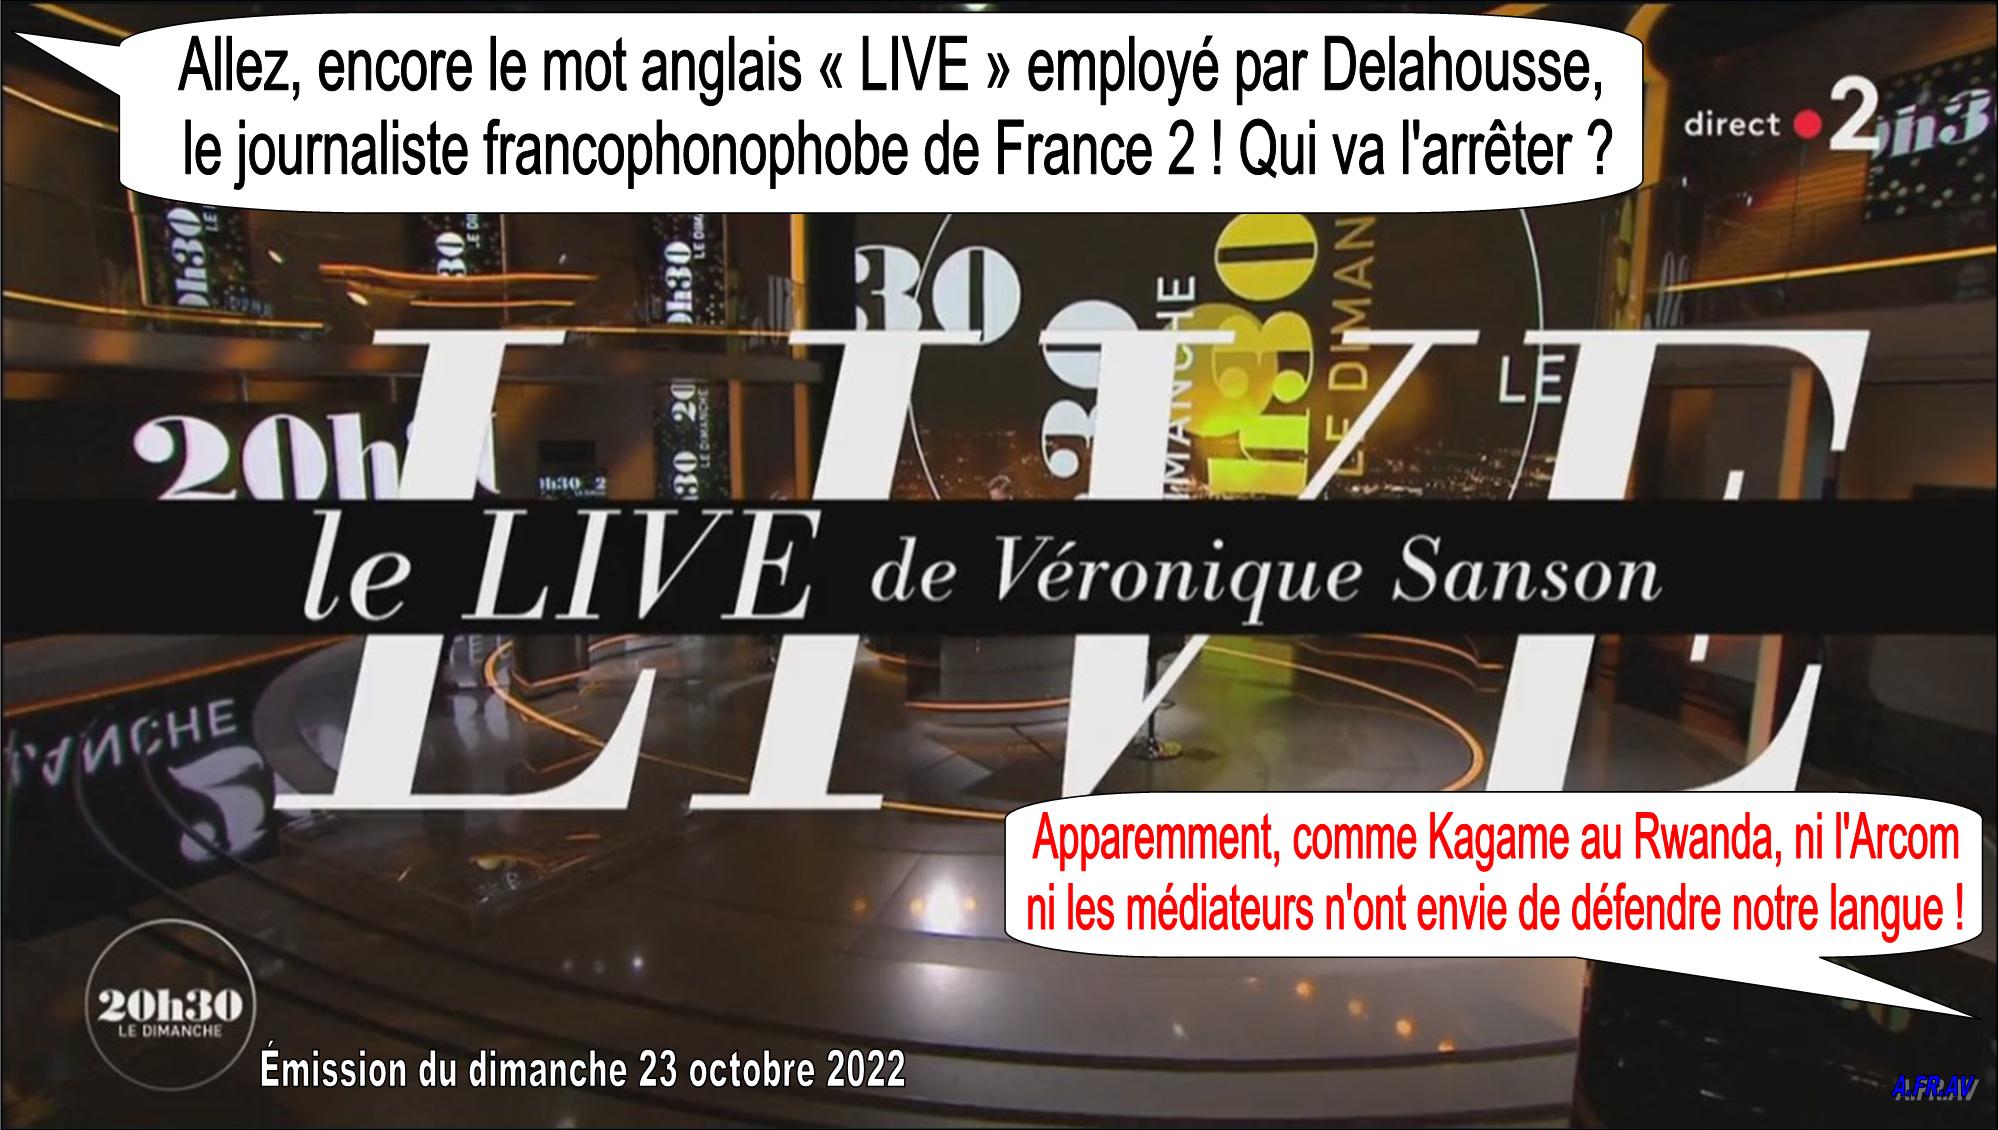 Laurent Delahousse, Véronique Samson, 20h30 Le Dimanche, chanson en direct, France 2